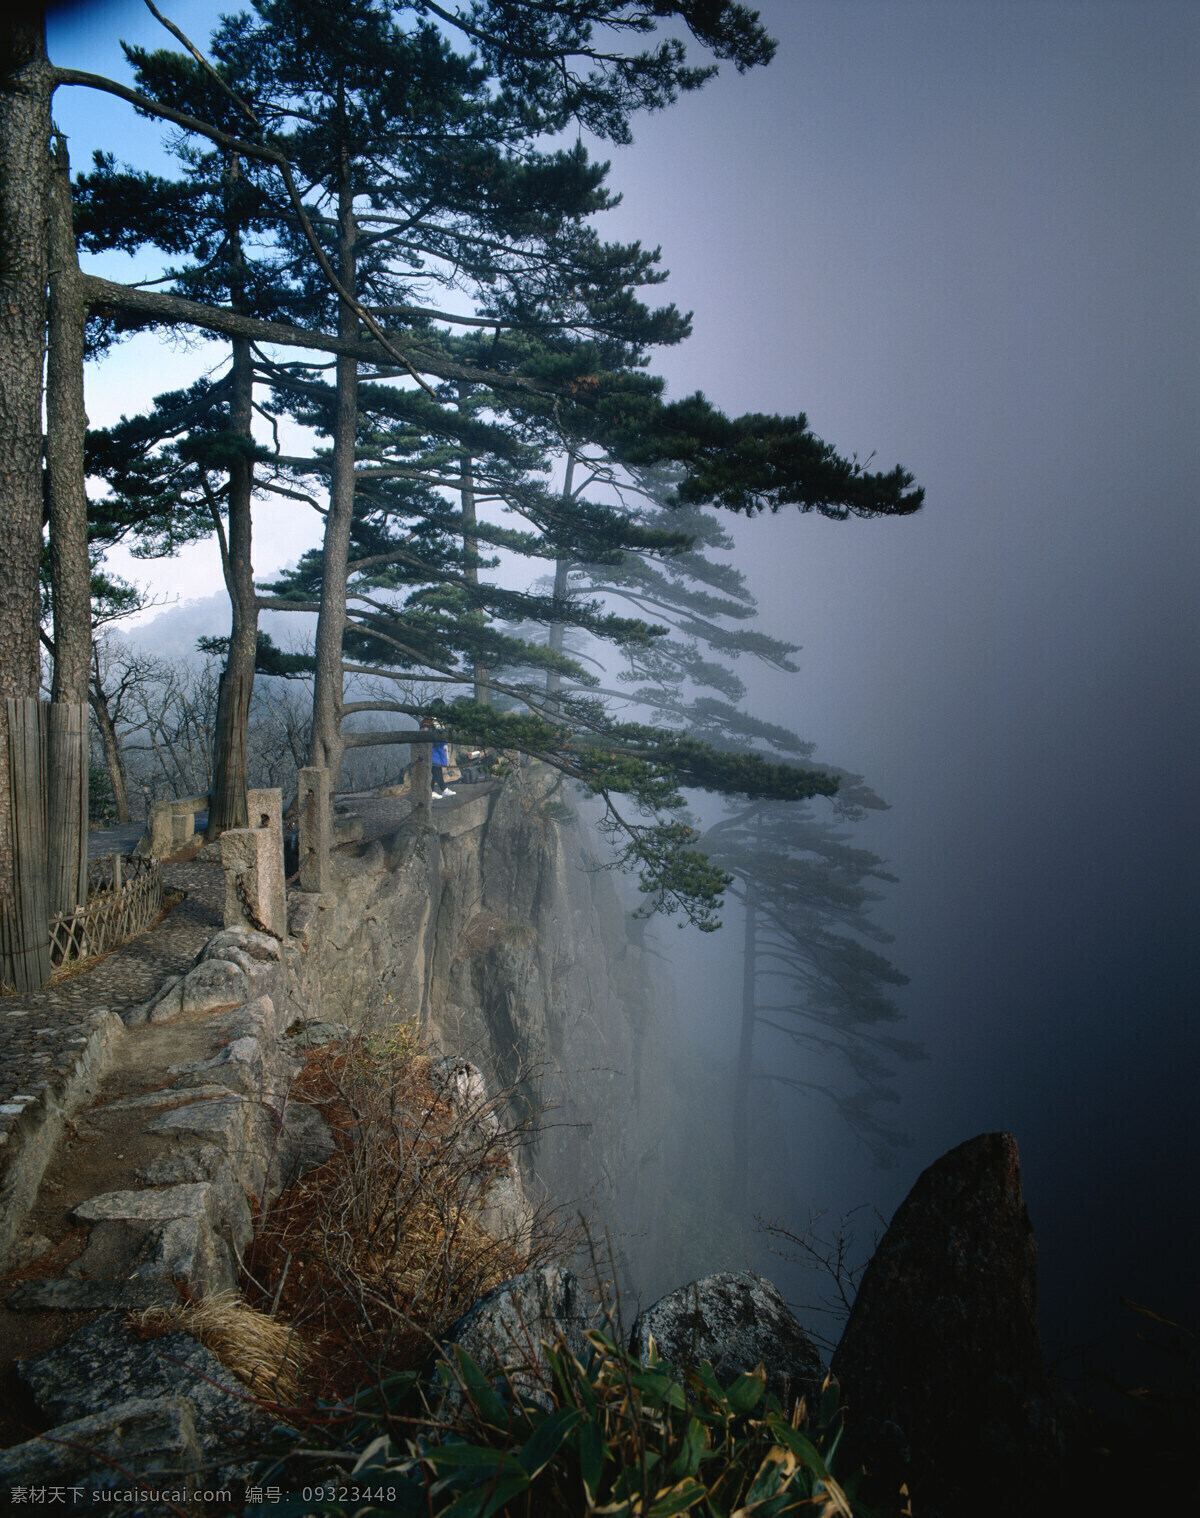 高山 峭壁 松树 景色 陡峭 悬崖 绿树 青松 烟雾 云雾 自然景观 高清图片 山水风景 风景图片